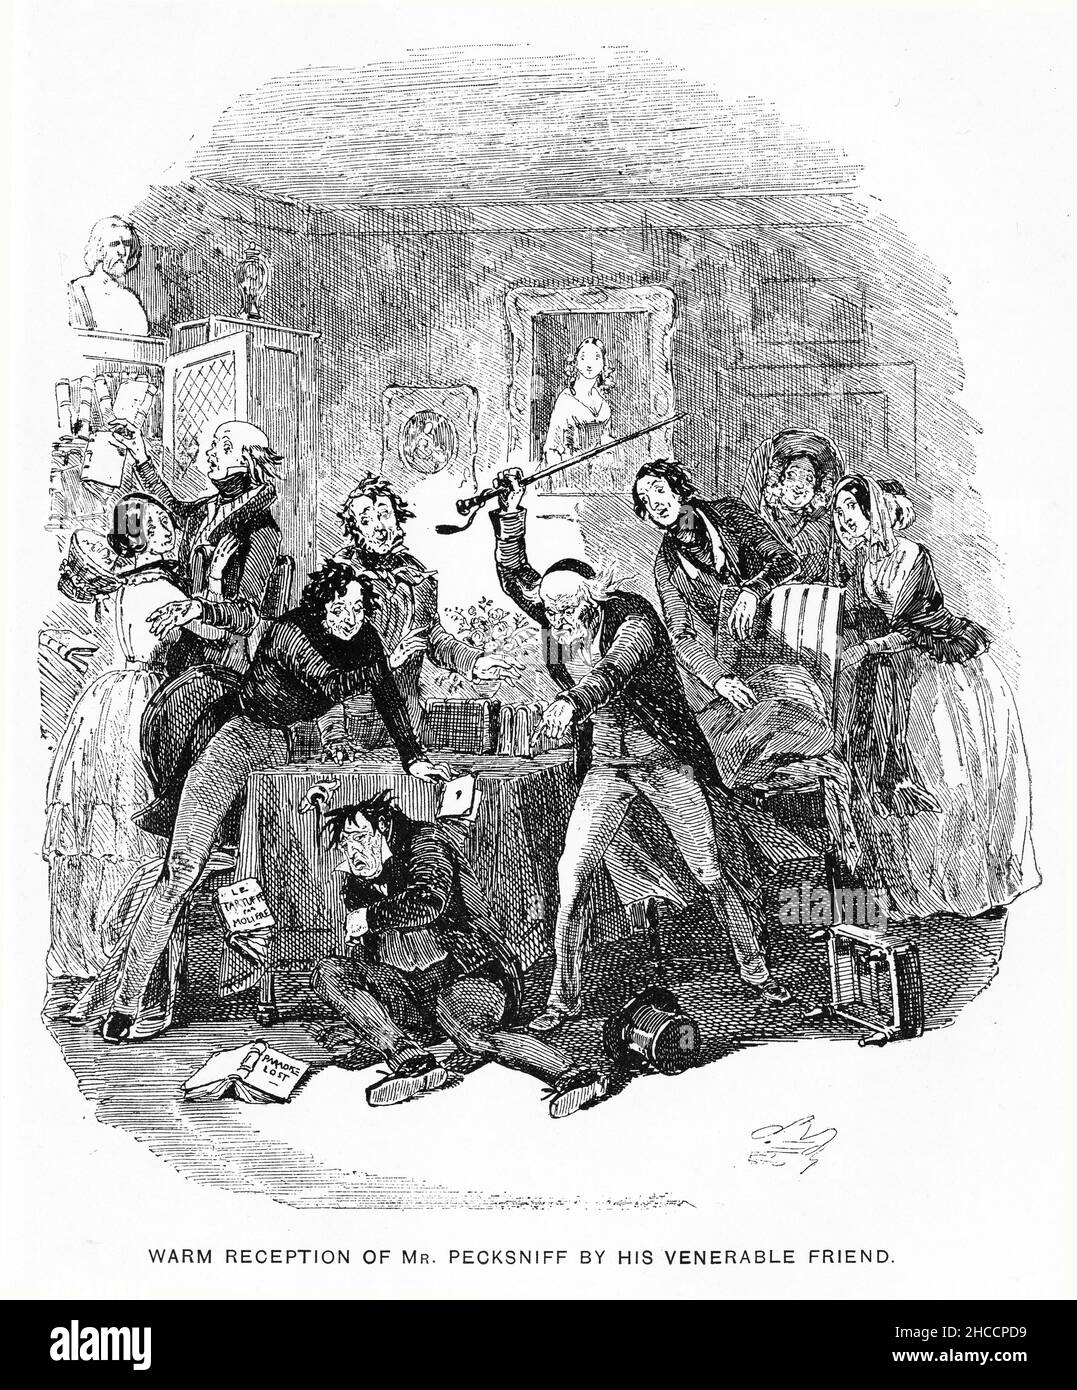 Gravur eines herzlichen Empfangs von Herrn Pecksniff durch seinen ehrwürdigen Freund, eine Szene aus einem Buch aus der viktorianischen Zeit von Charles Dickens, veröffentlicht um 1908 Stockfoto